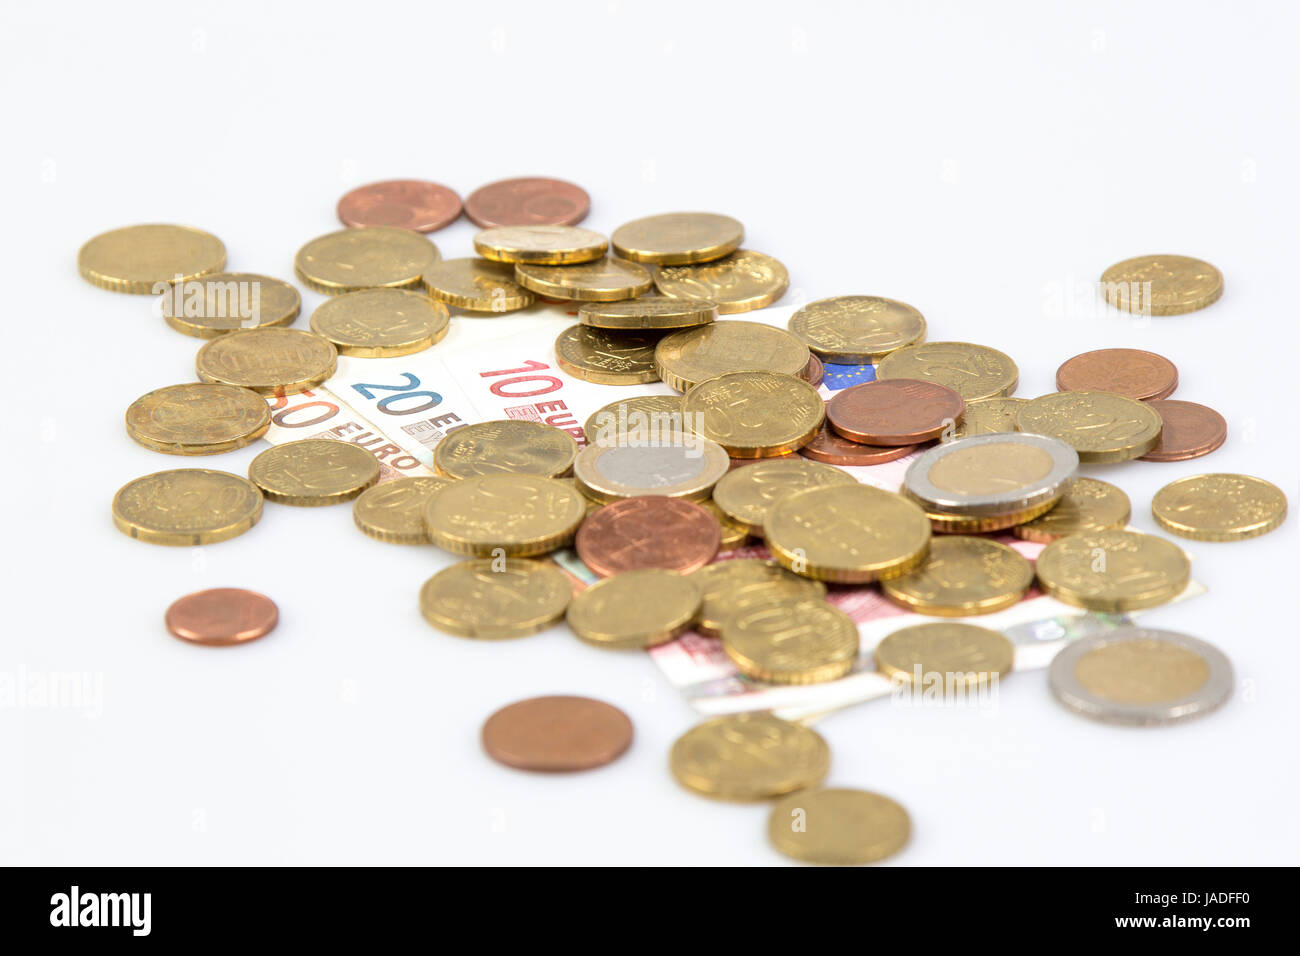 Euromünzen scheine freigestellt und auf weißem hintergrund - les pièces en euros et quelques notes isolé sur fond blanc Banque D'Images